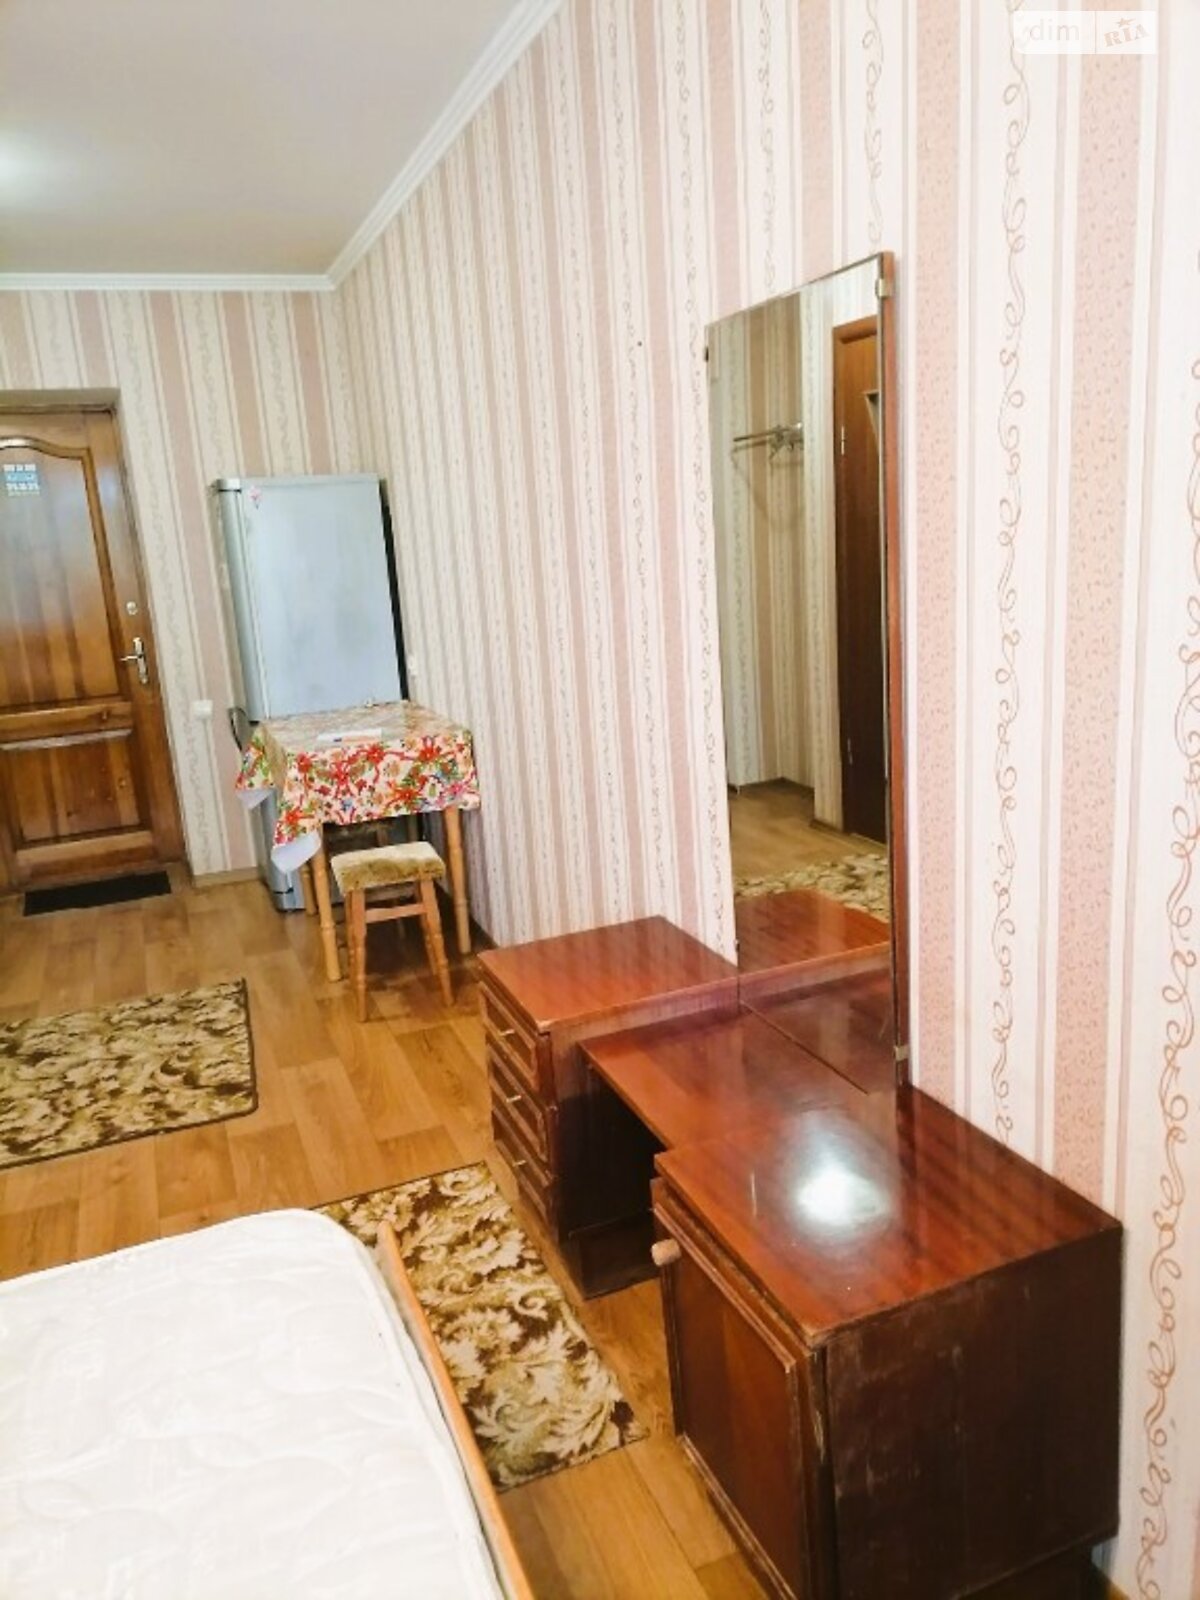 Кімната в Одесі на вул. Капітана Кузнецова в районі Пересипський на продаж фото 1